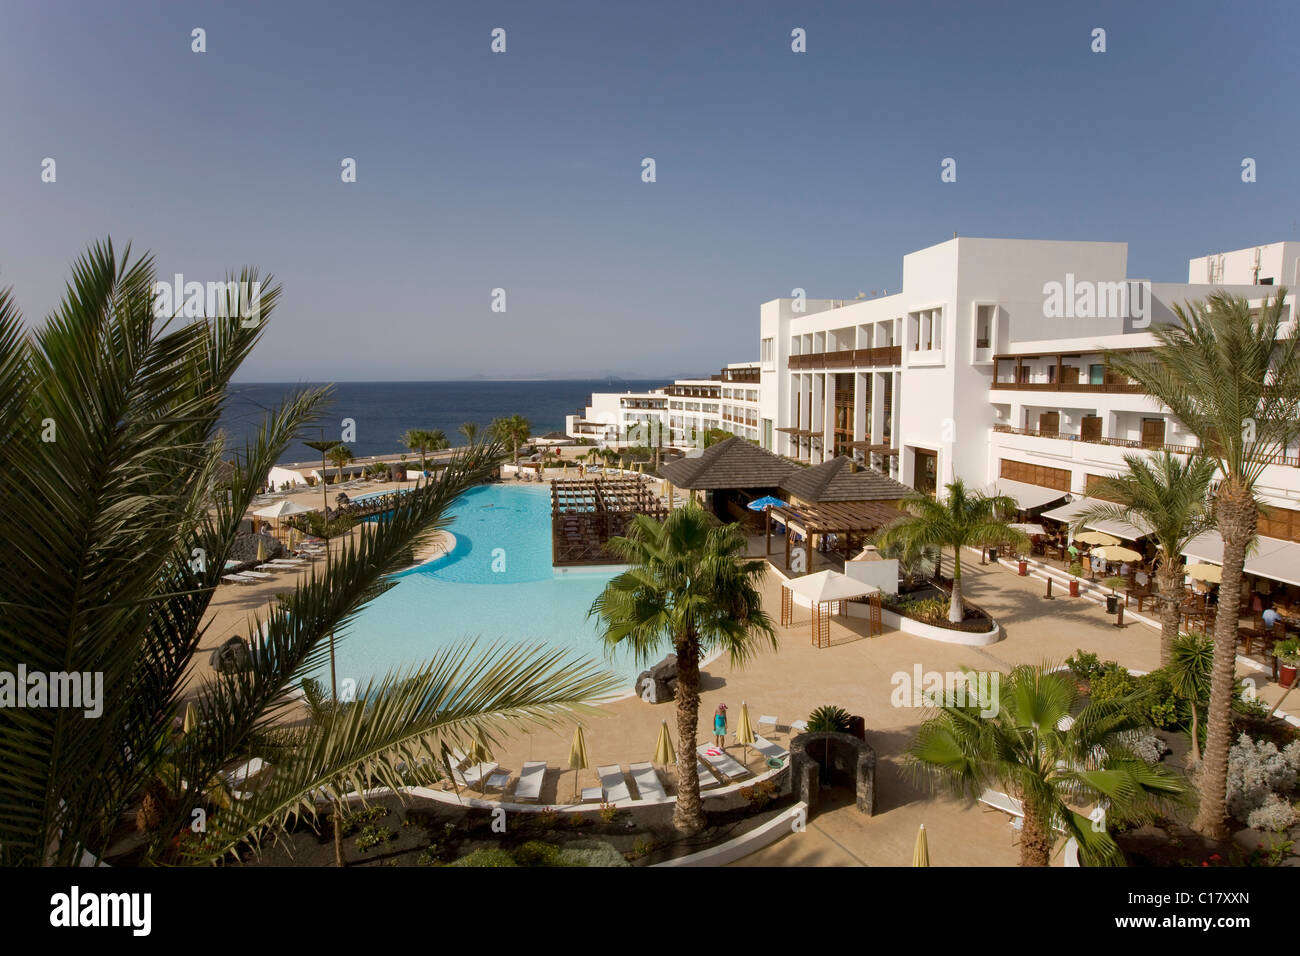 La piscina dell'Hotel Hesperia Lanzarote, Costa Calero, Lanzarote, Isole Canarie, Spagna, Europa Foto Stock